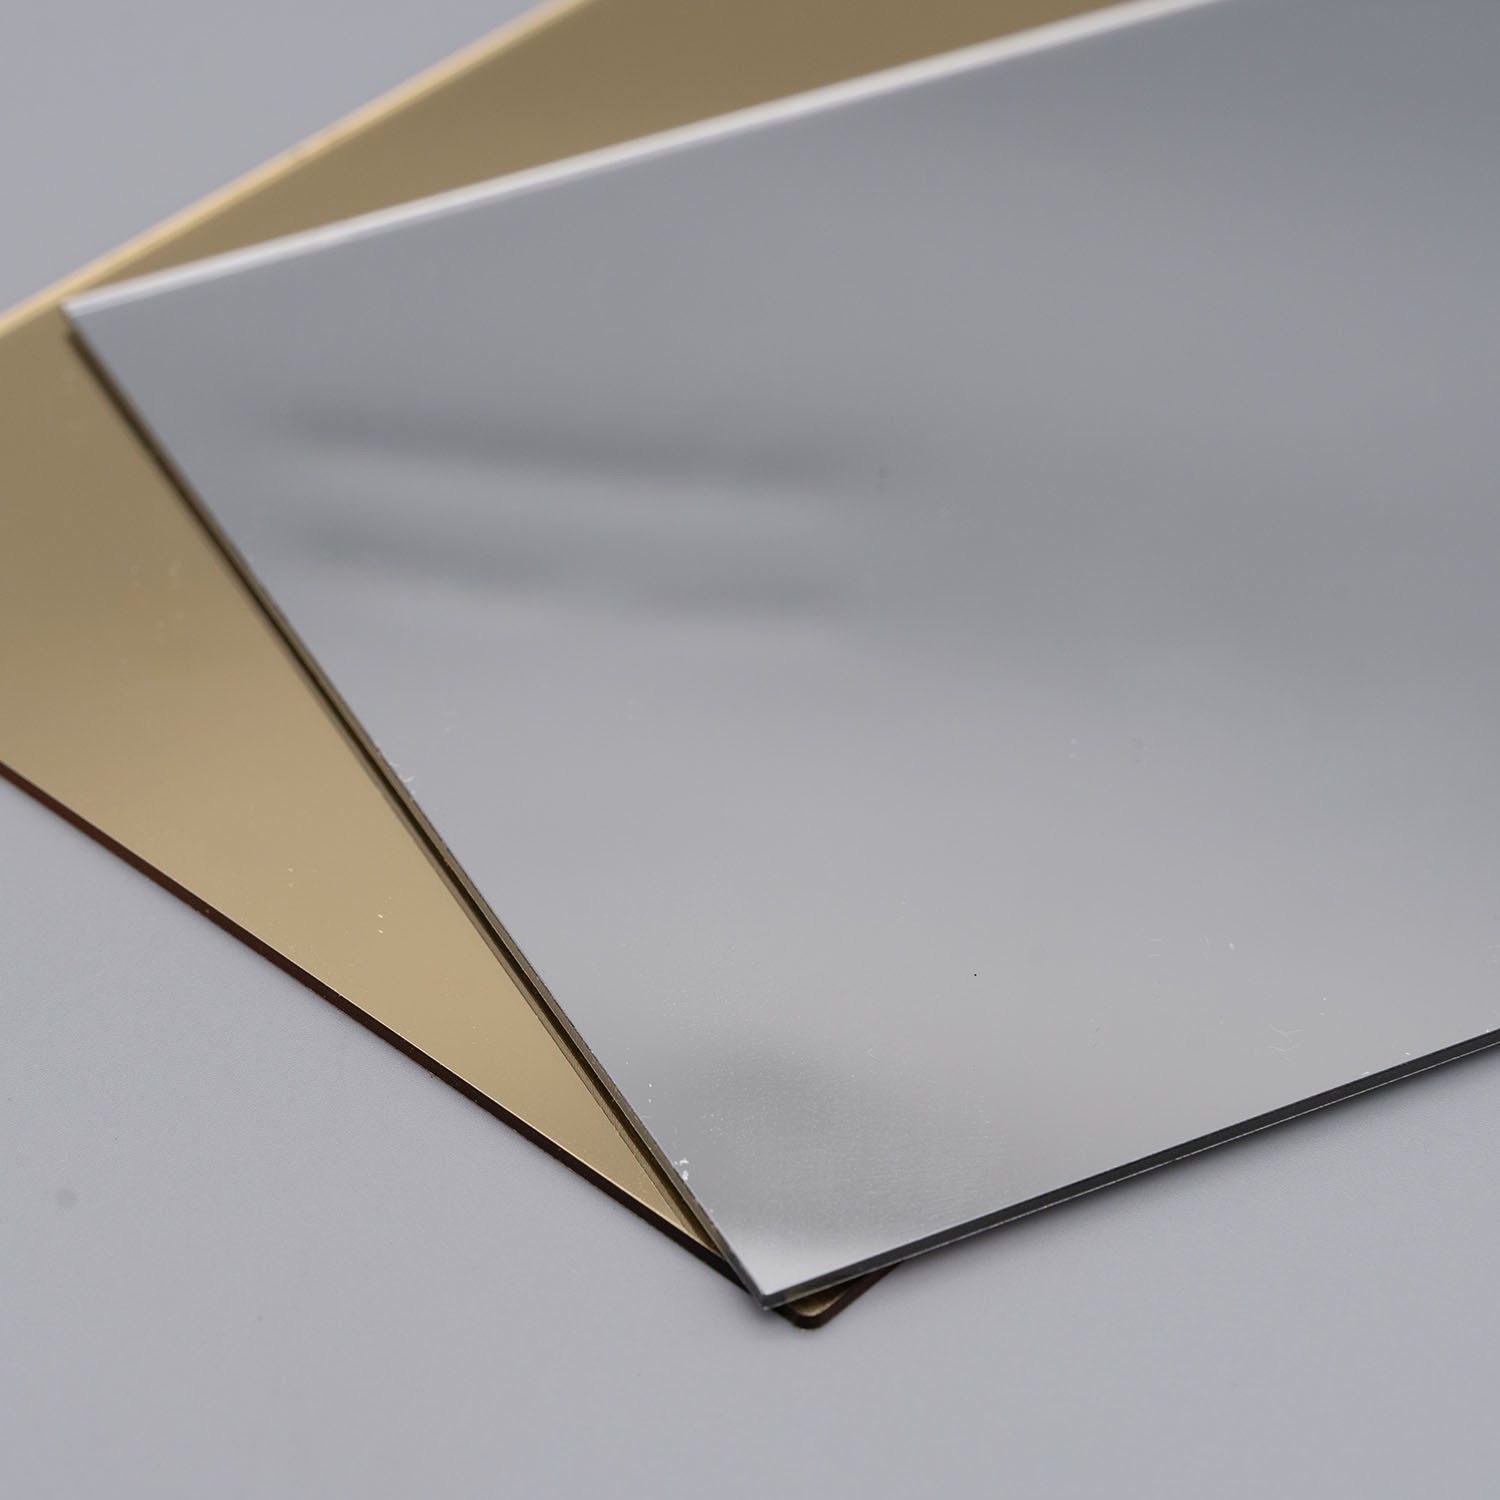 Best Quality Acrylic Plexiglass Mirror Sheet Manufacturers, Best Quality Acrylic Plexiglass Mirror Sheet Factory, Supply Best Quality Acrylic Plexiglass Mirror Sheet